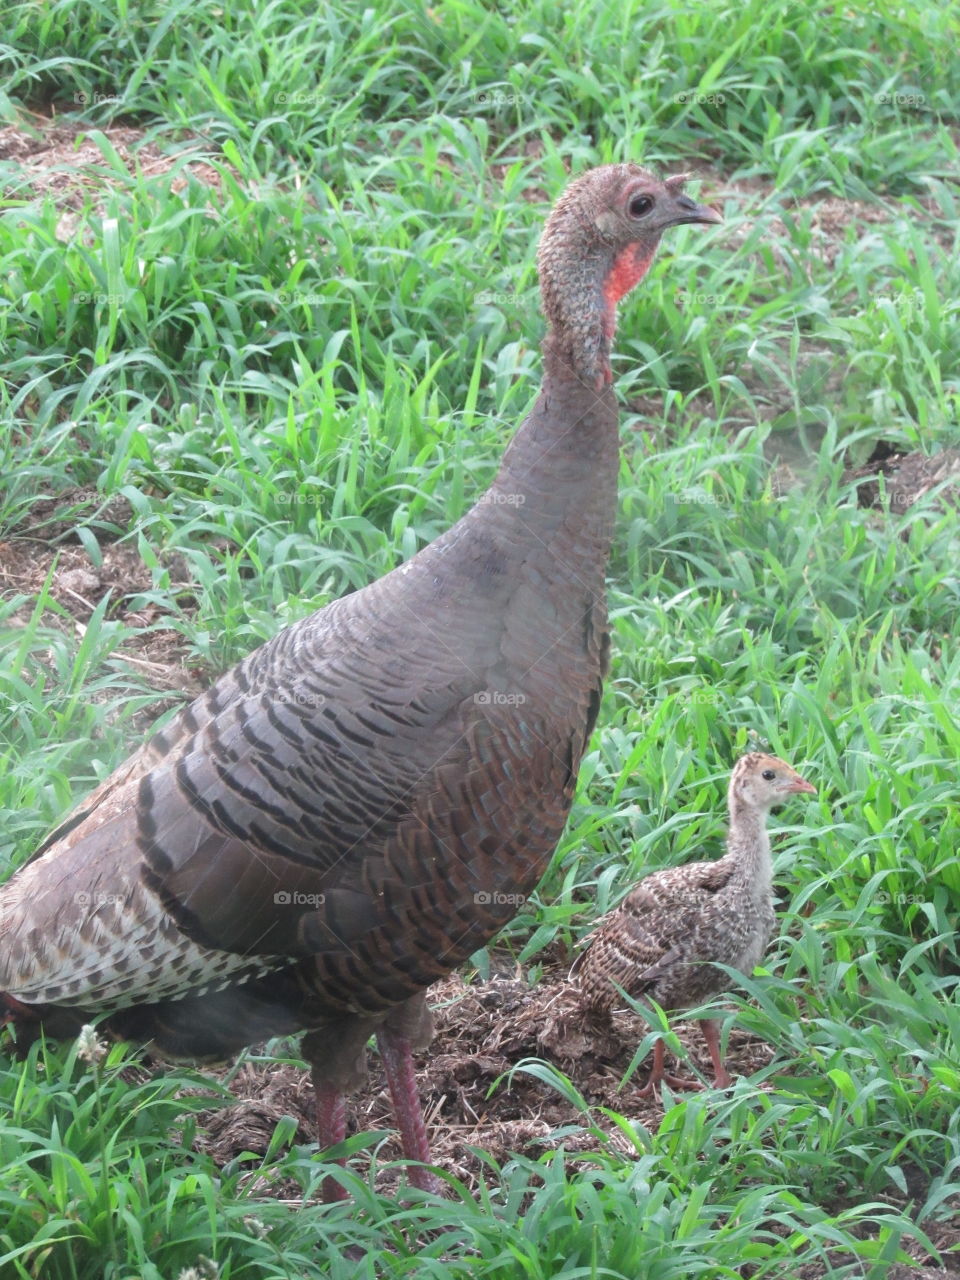 Wild Turkey hen and her poult foraging